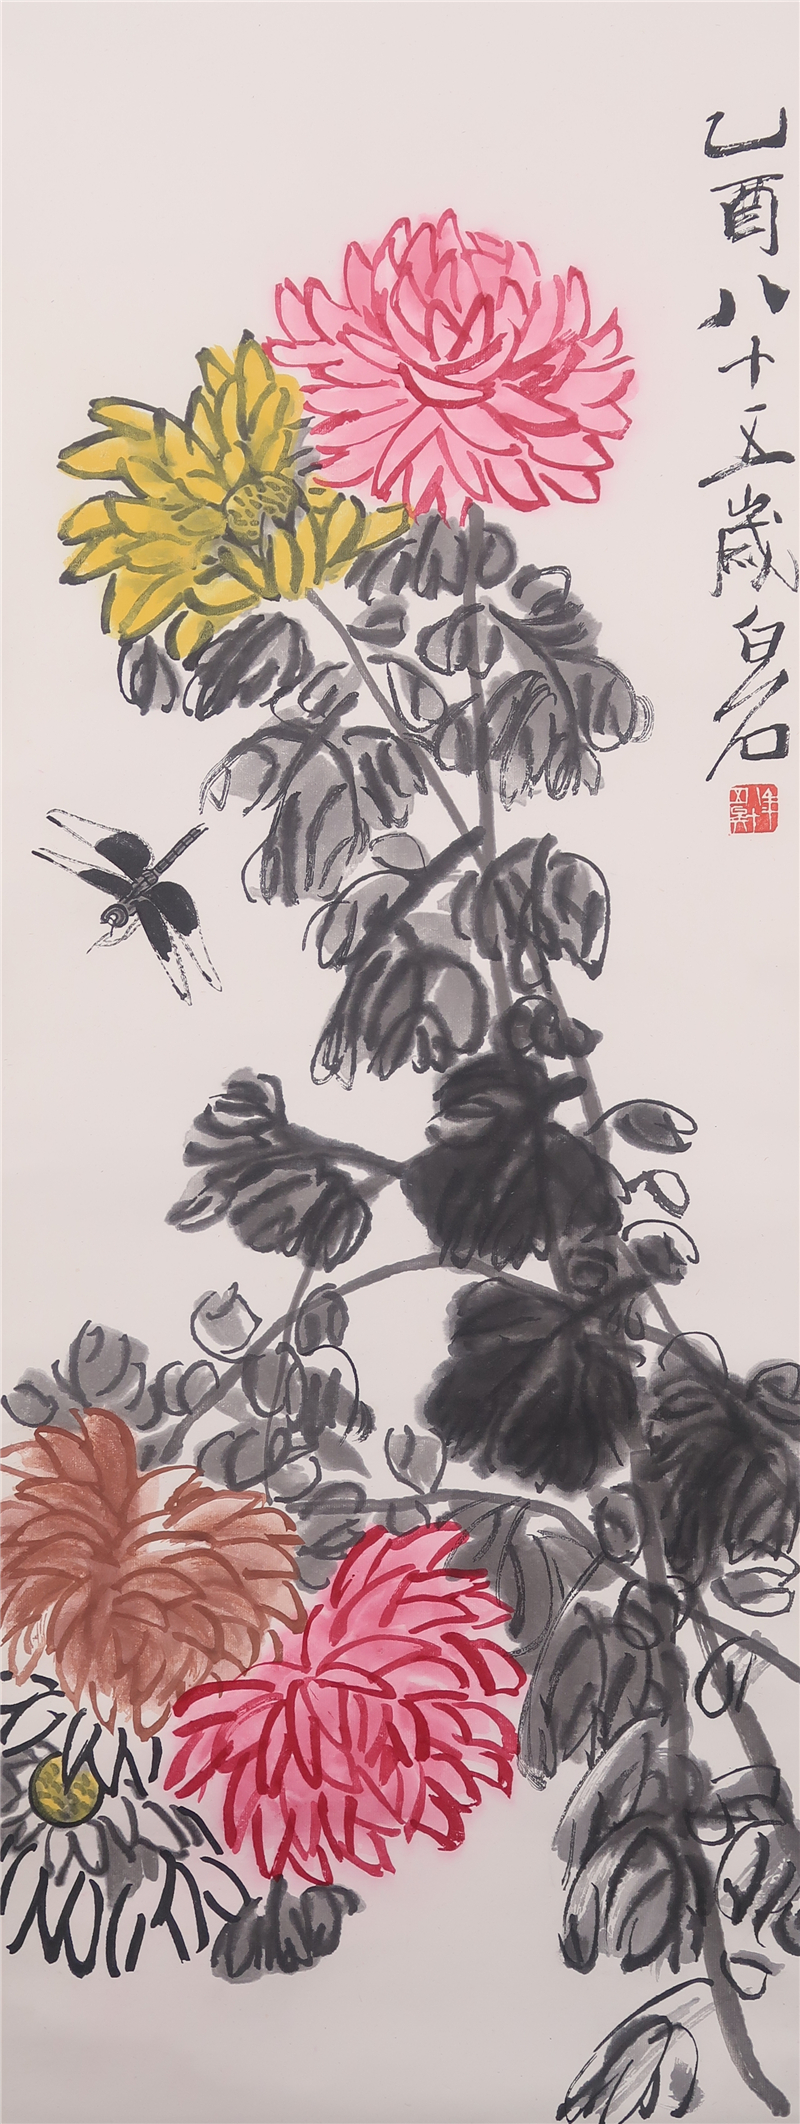 套色木版水印《菊花蜻蜓》（齐白石绘·杨柳青画社制·画心尺寸91×34厘米 